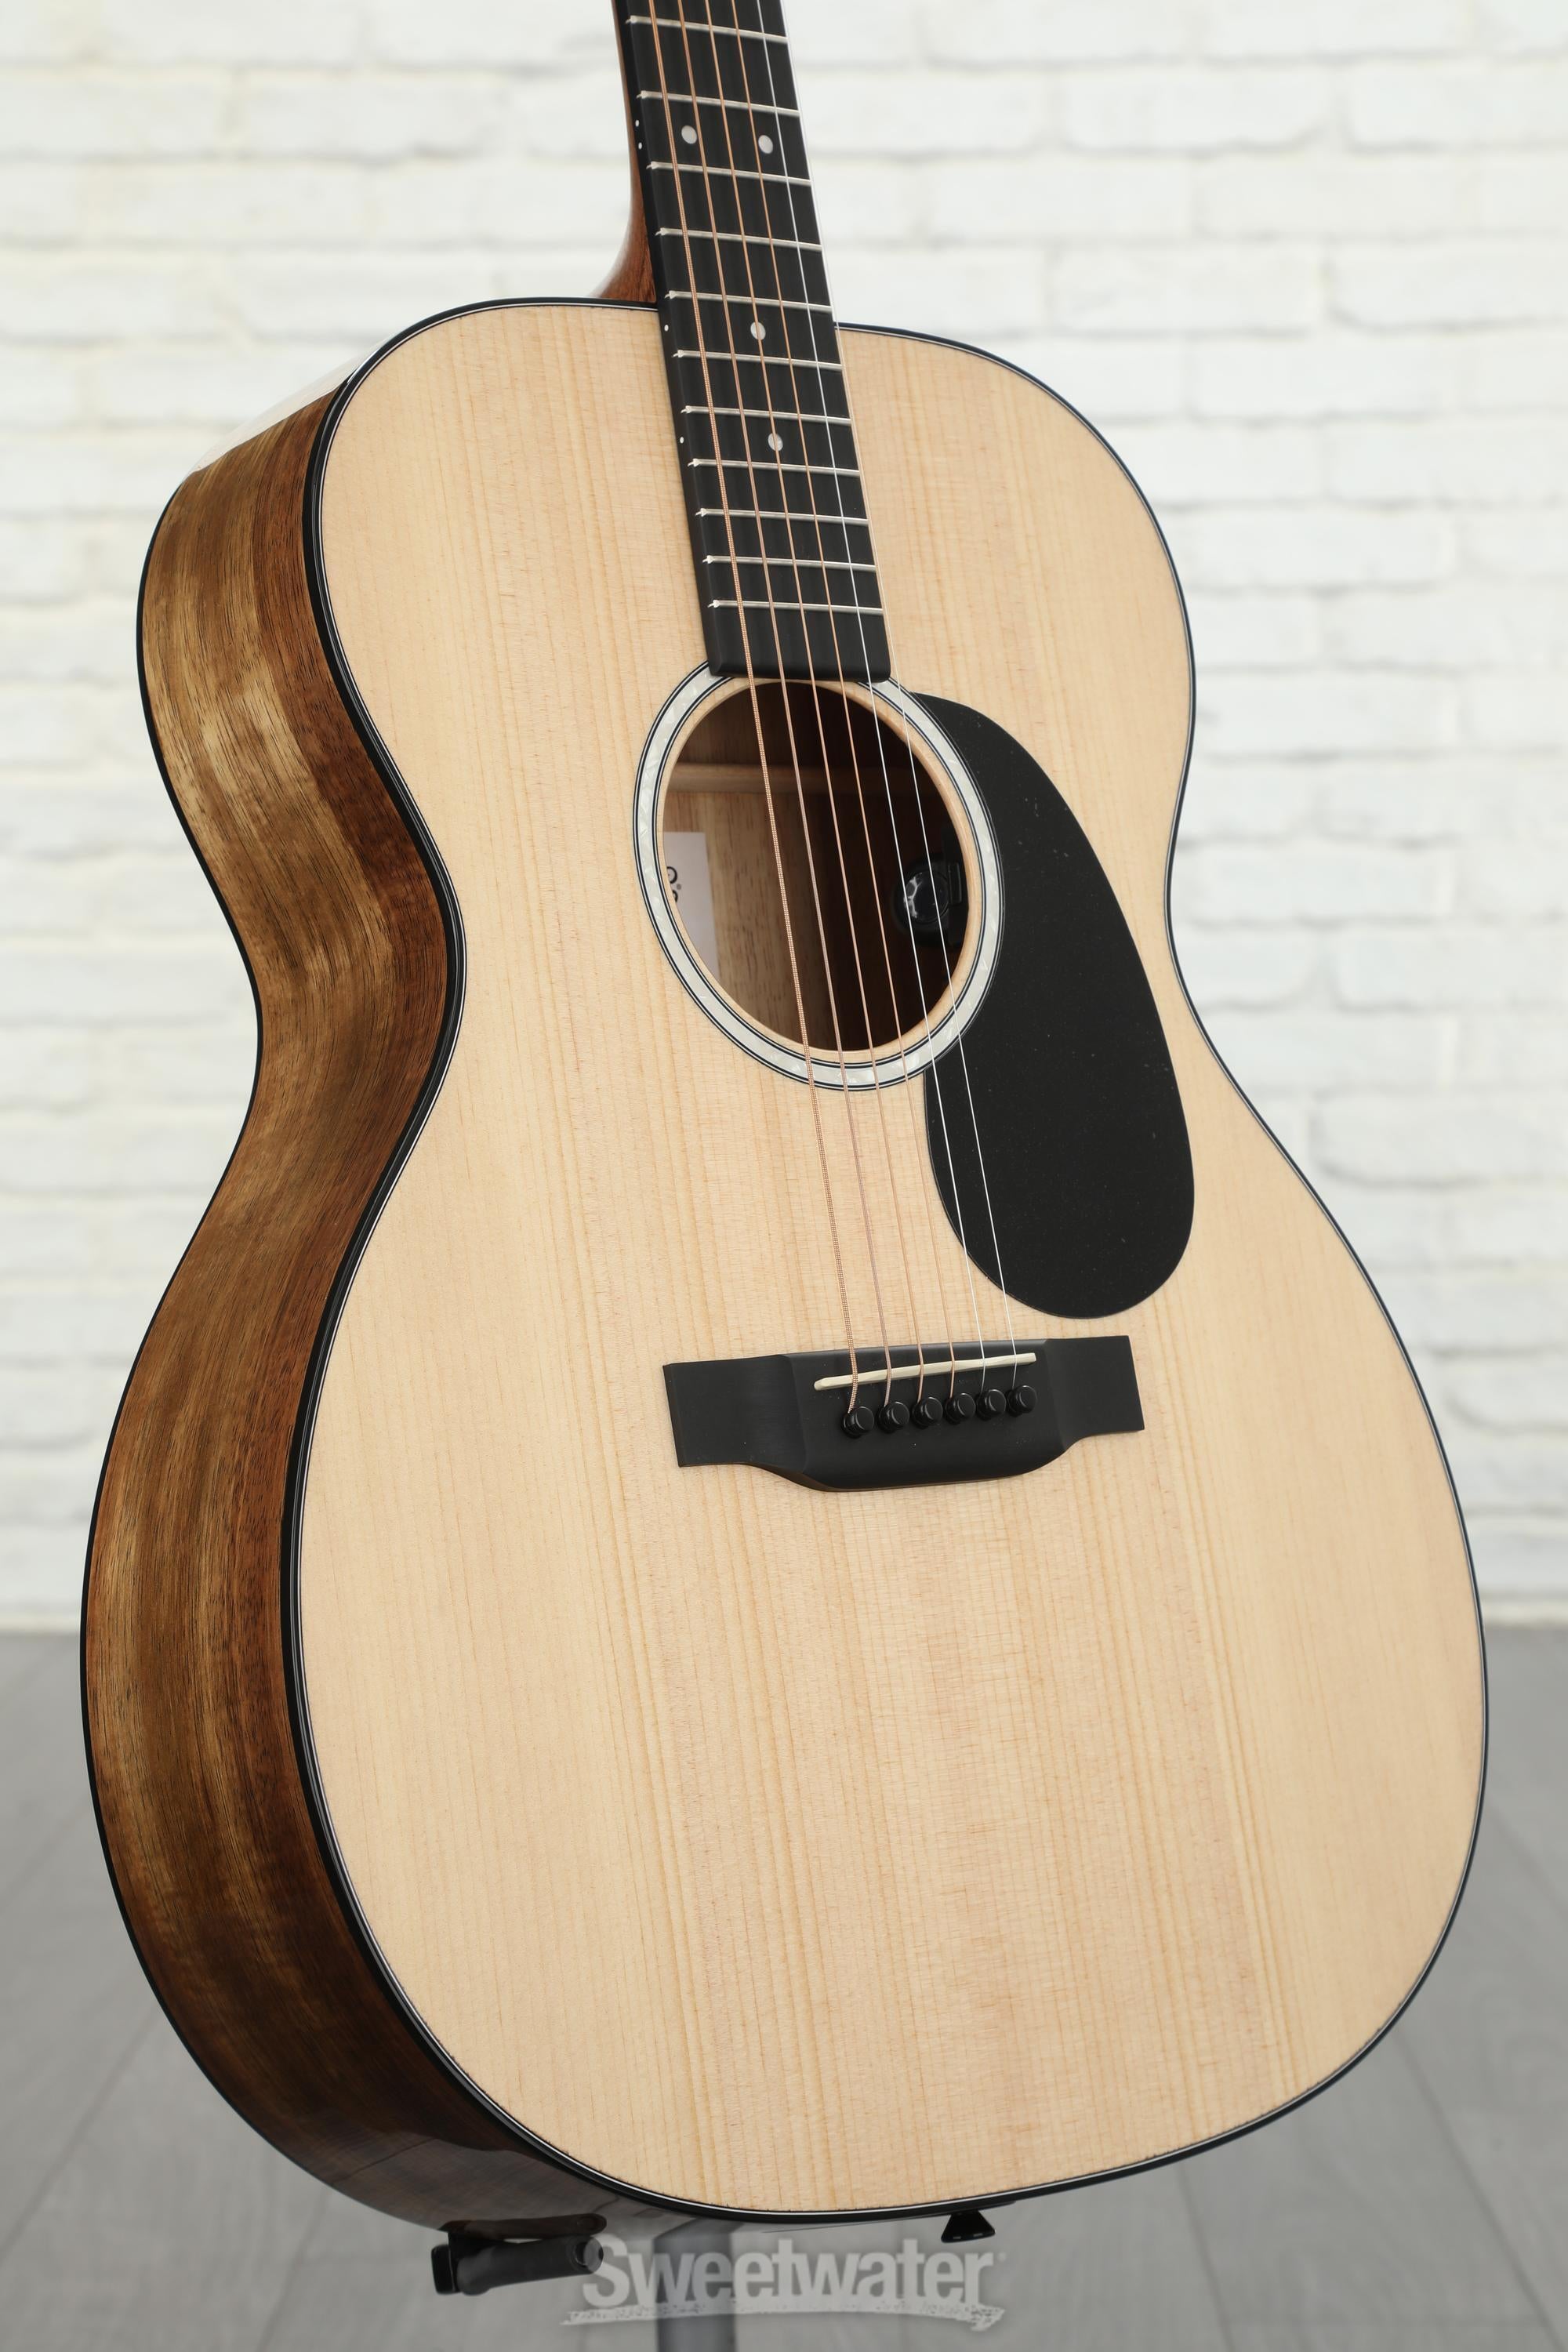 Martin 000-12E Koa Acoustic-electric Guitar - Natural